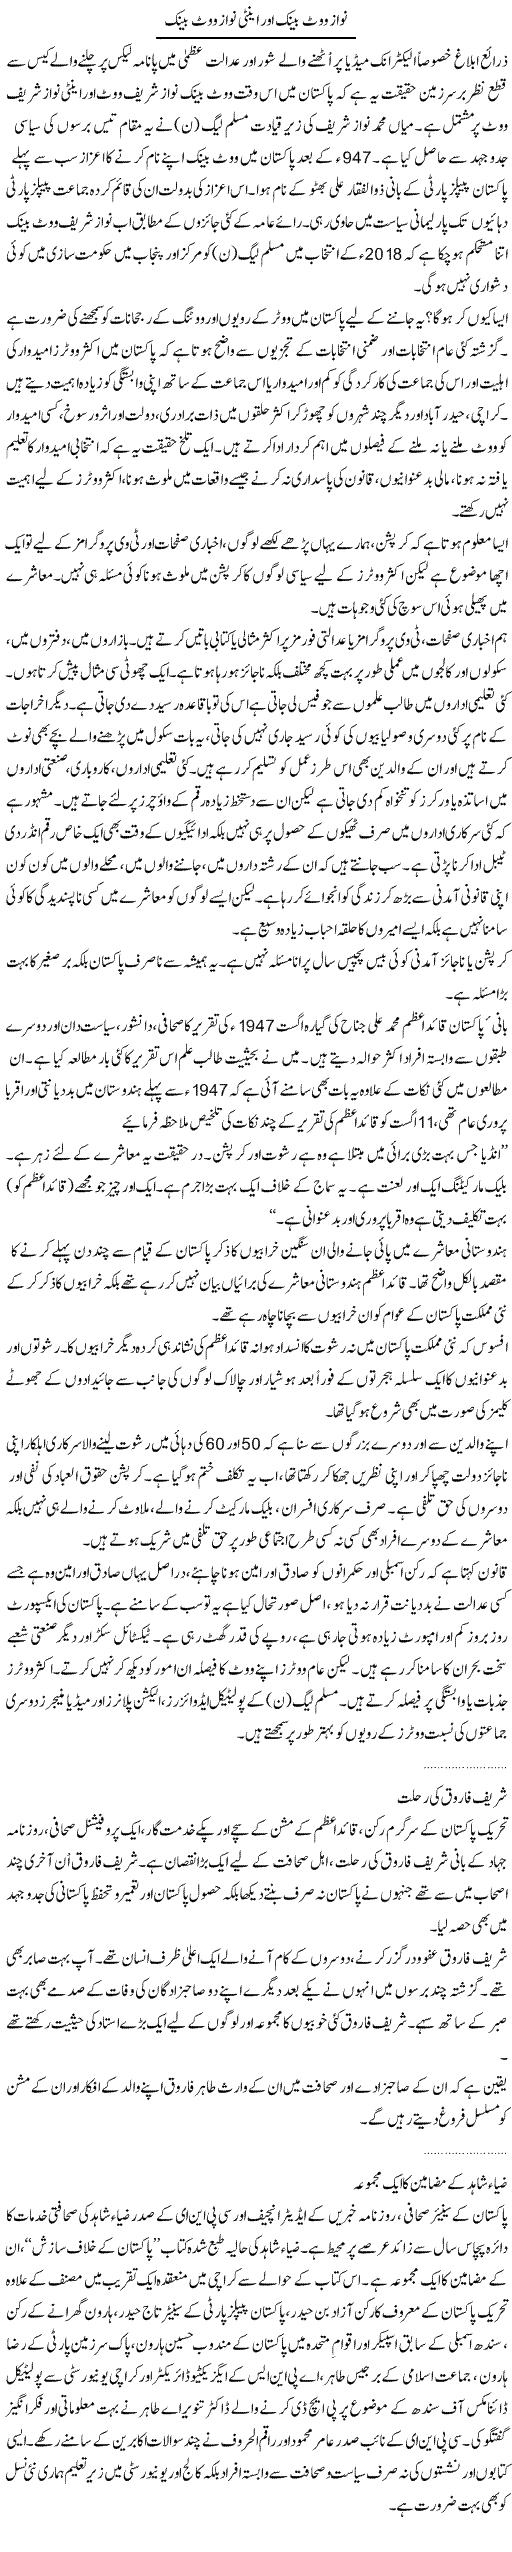 Nawaz Vote Bank Aur Anti Nawaz Vote Bank | Dr. Waqar Yousuf Azeemi | Daily Urdu Columns